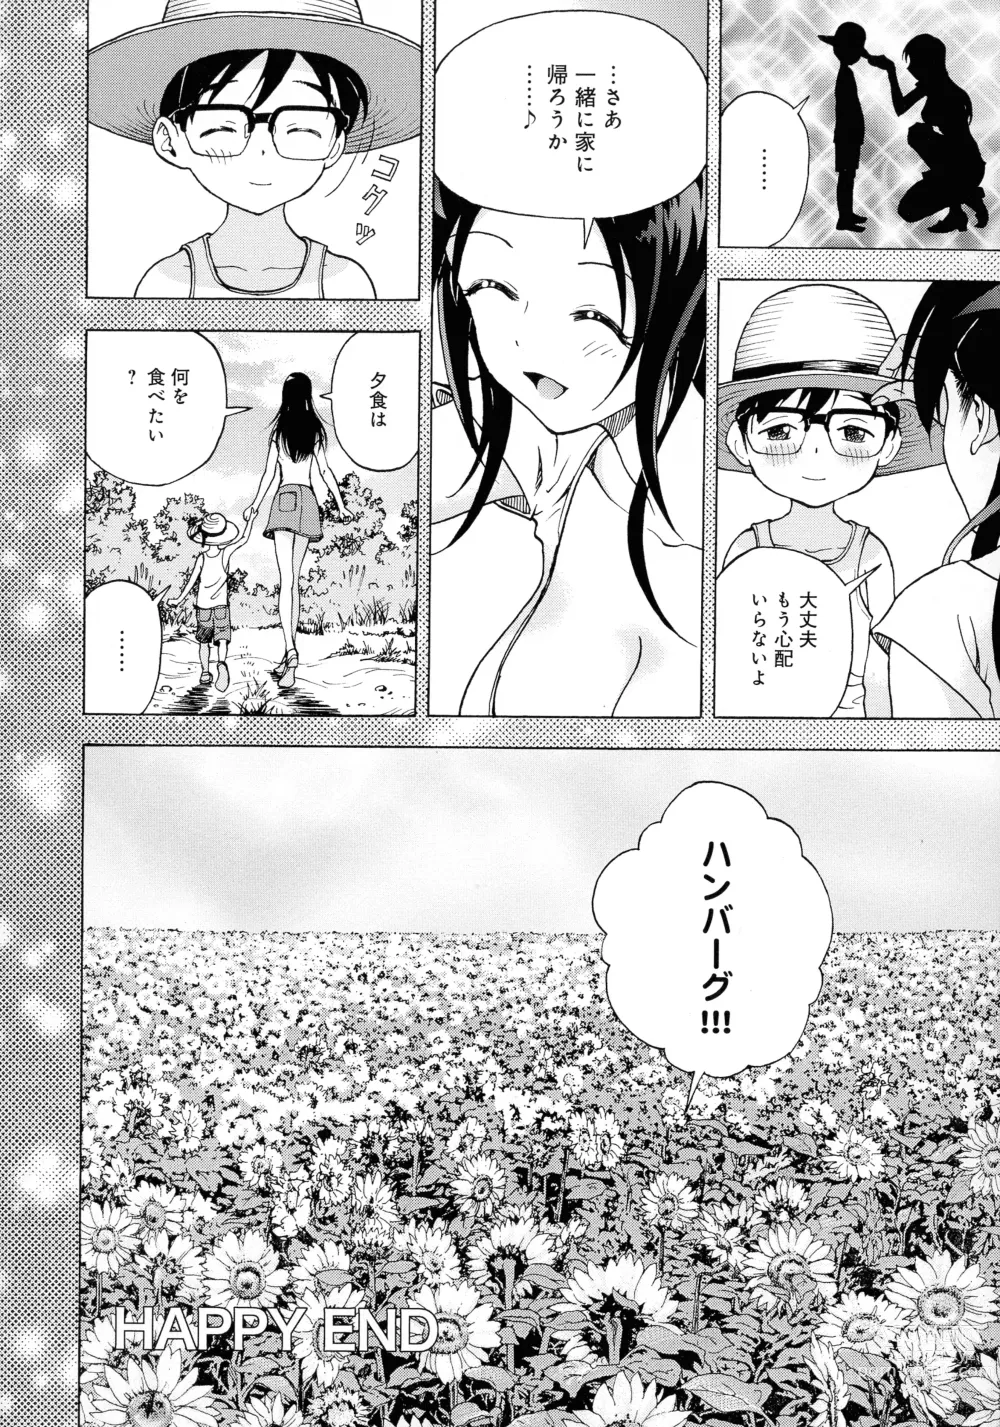 Page 197 of manga Bokinbako 2